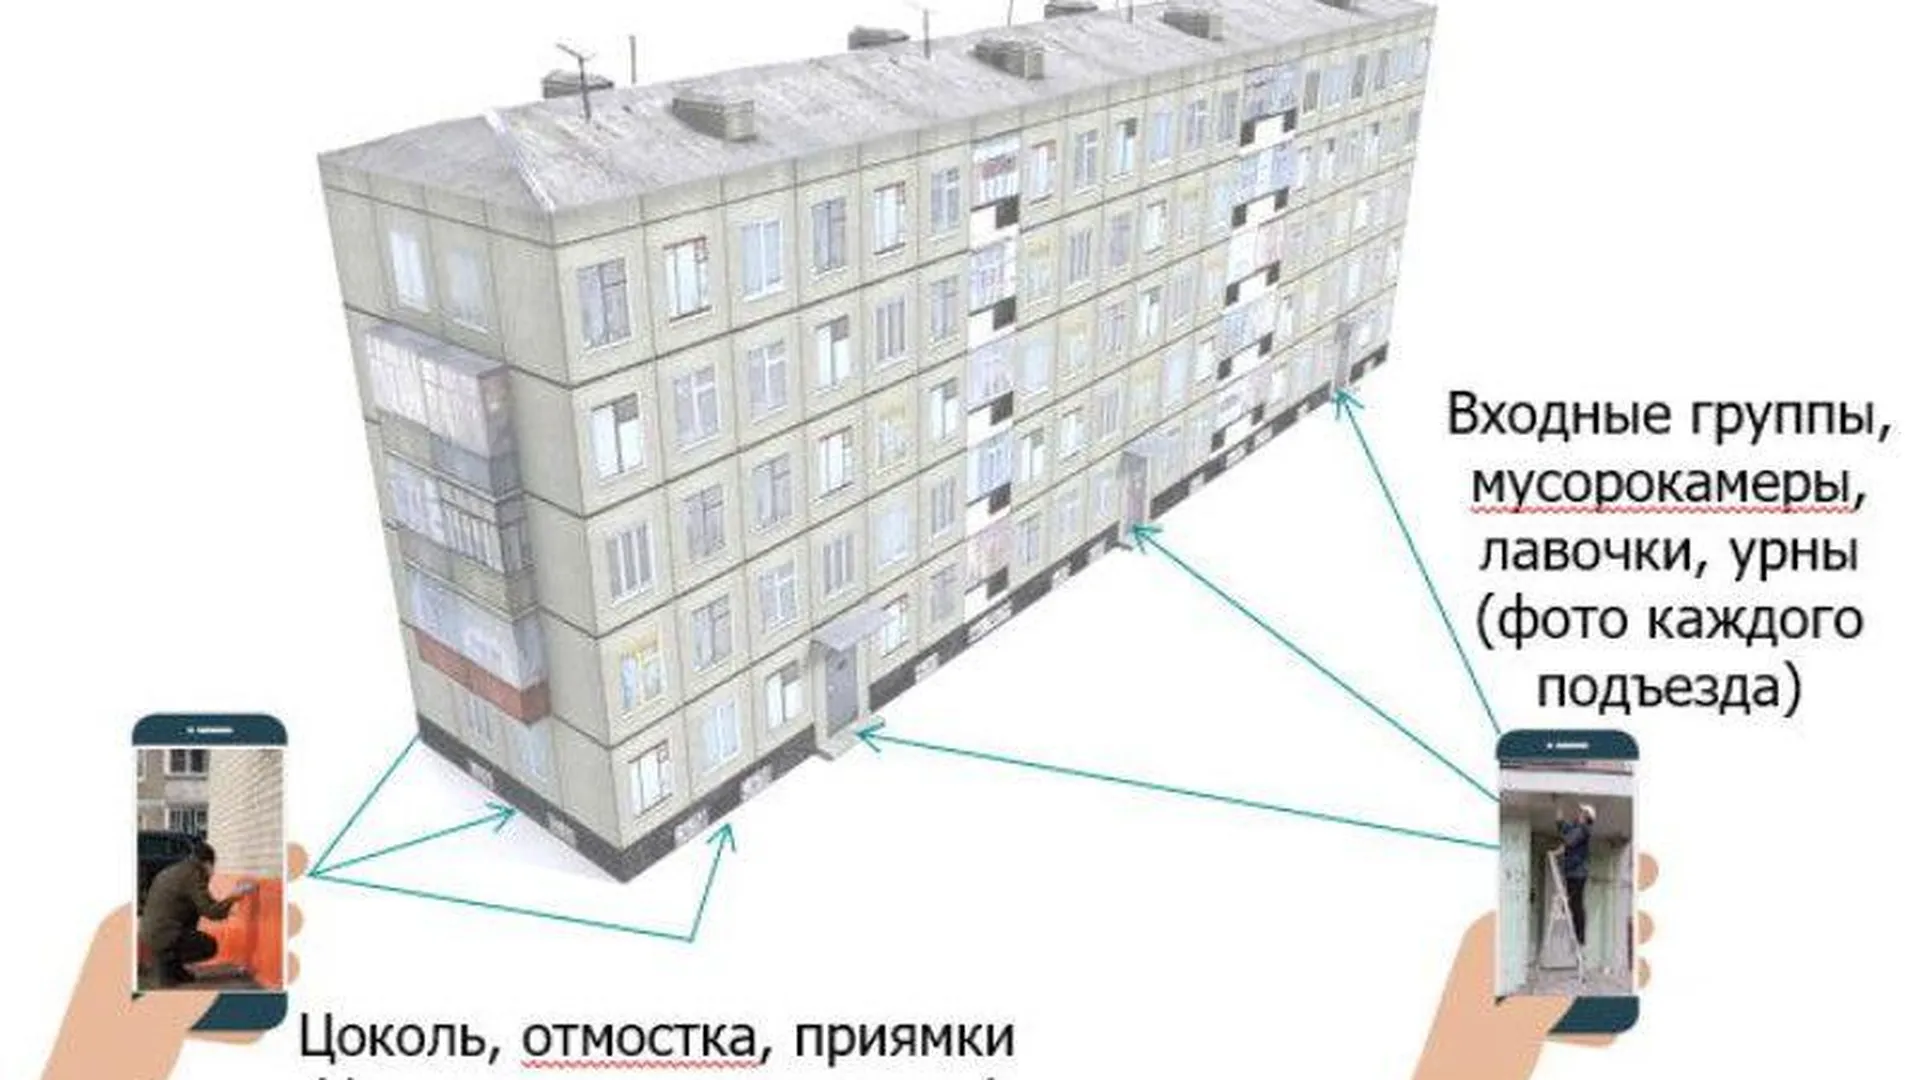 Пресс-служба Государственной жилищной инспекции Московской области